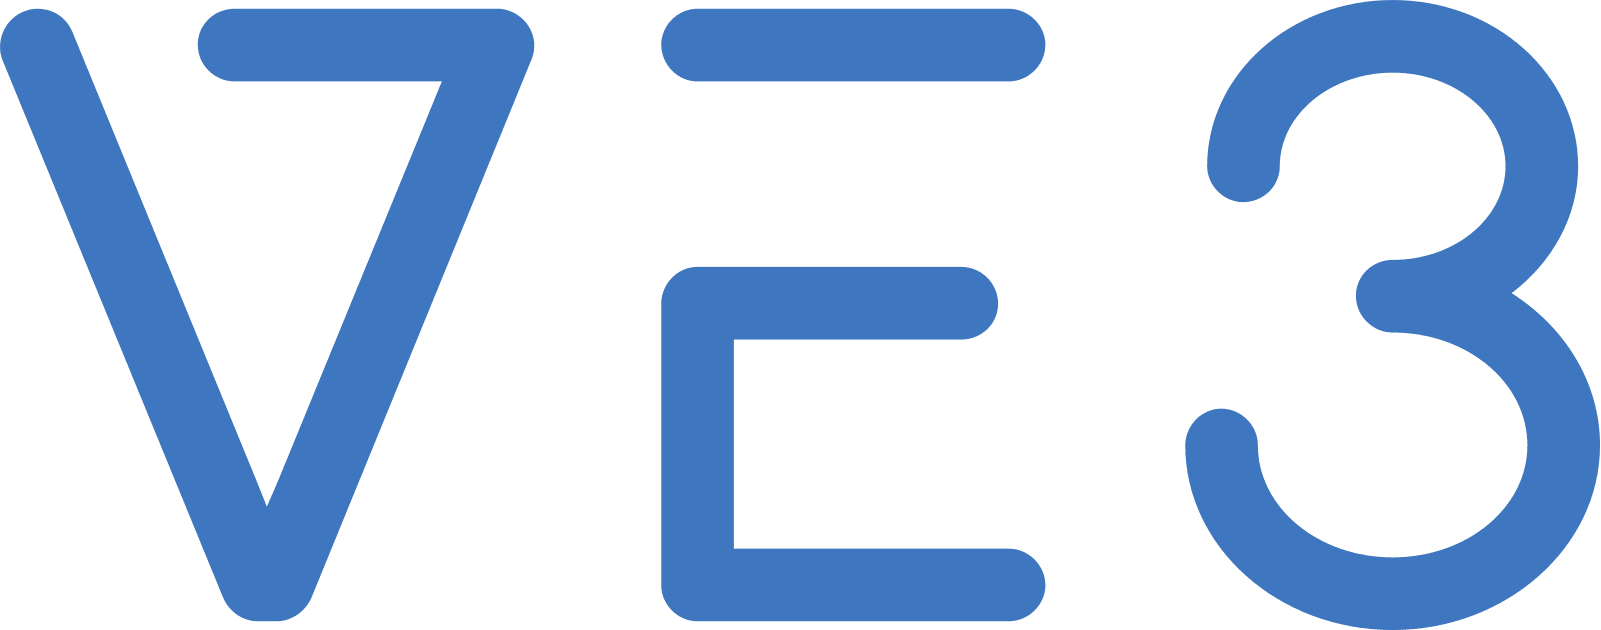 VE3-logo-1